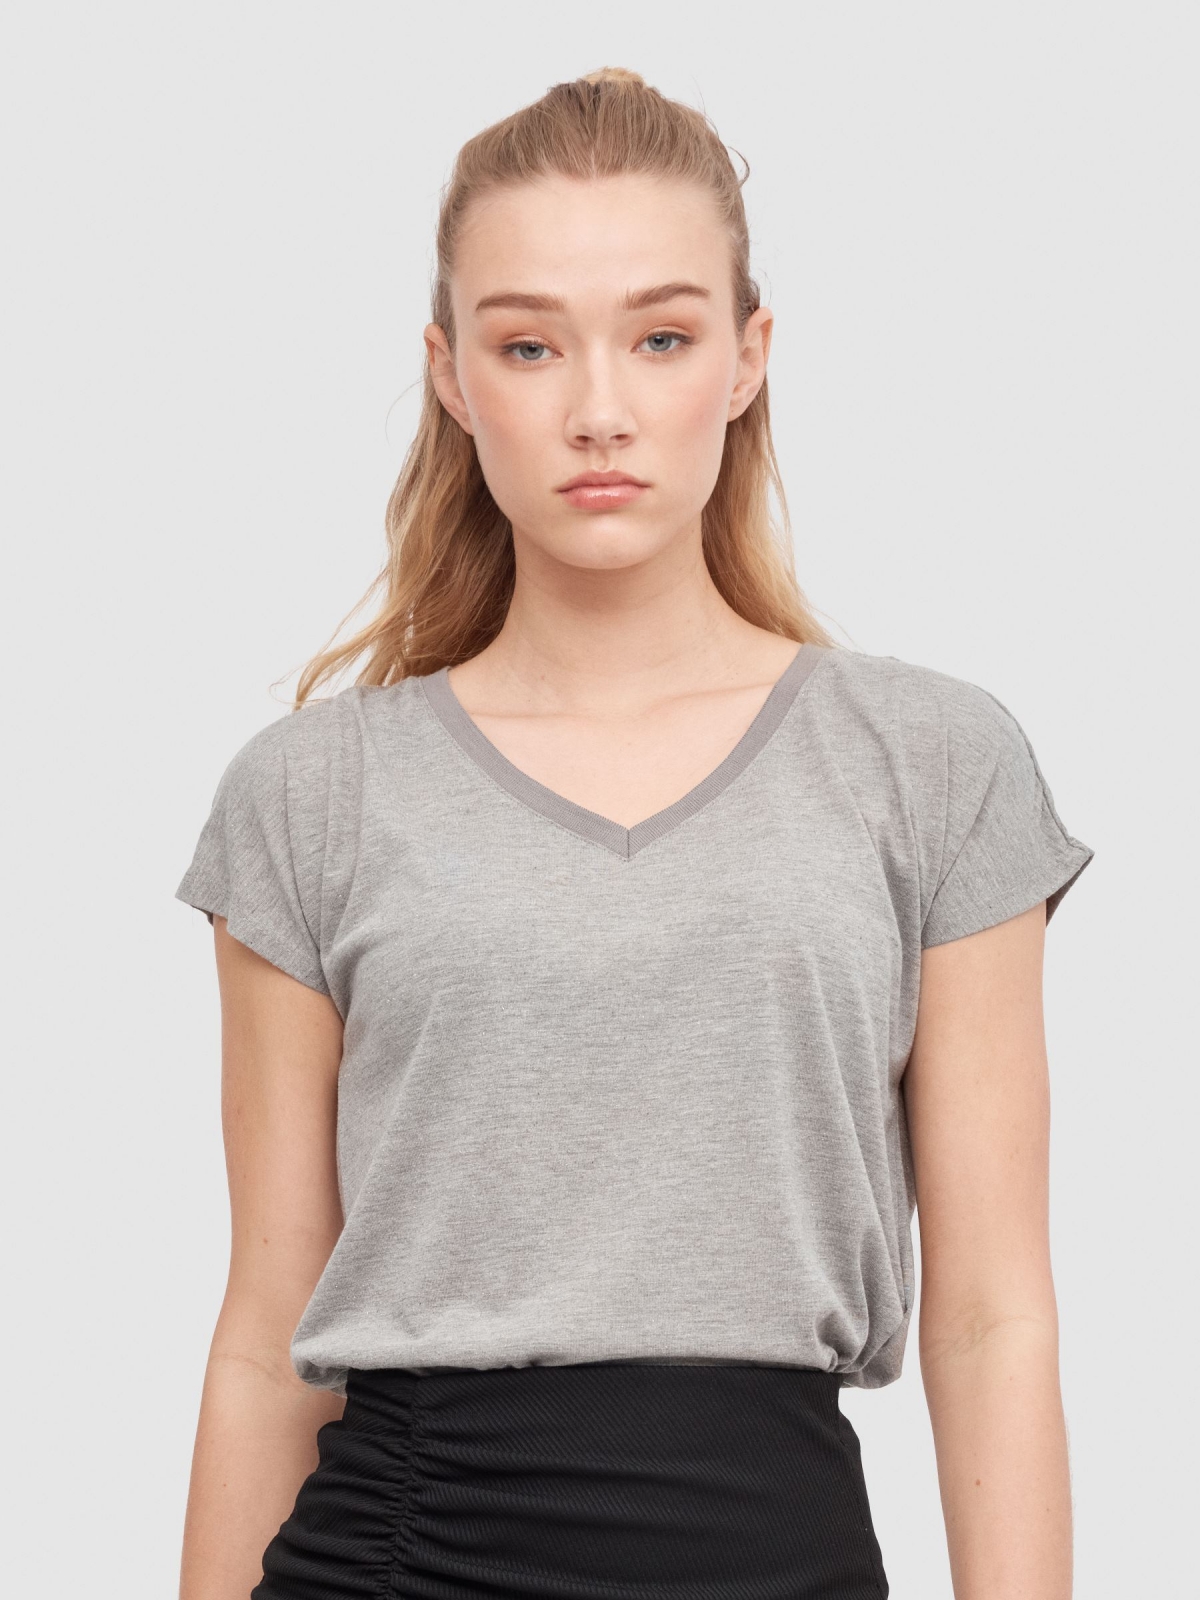 Camiseta sin mangas con cuello de pico gris vista media frontal